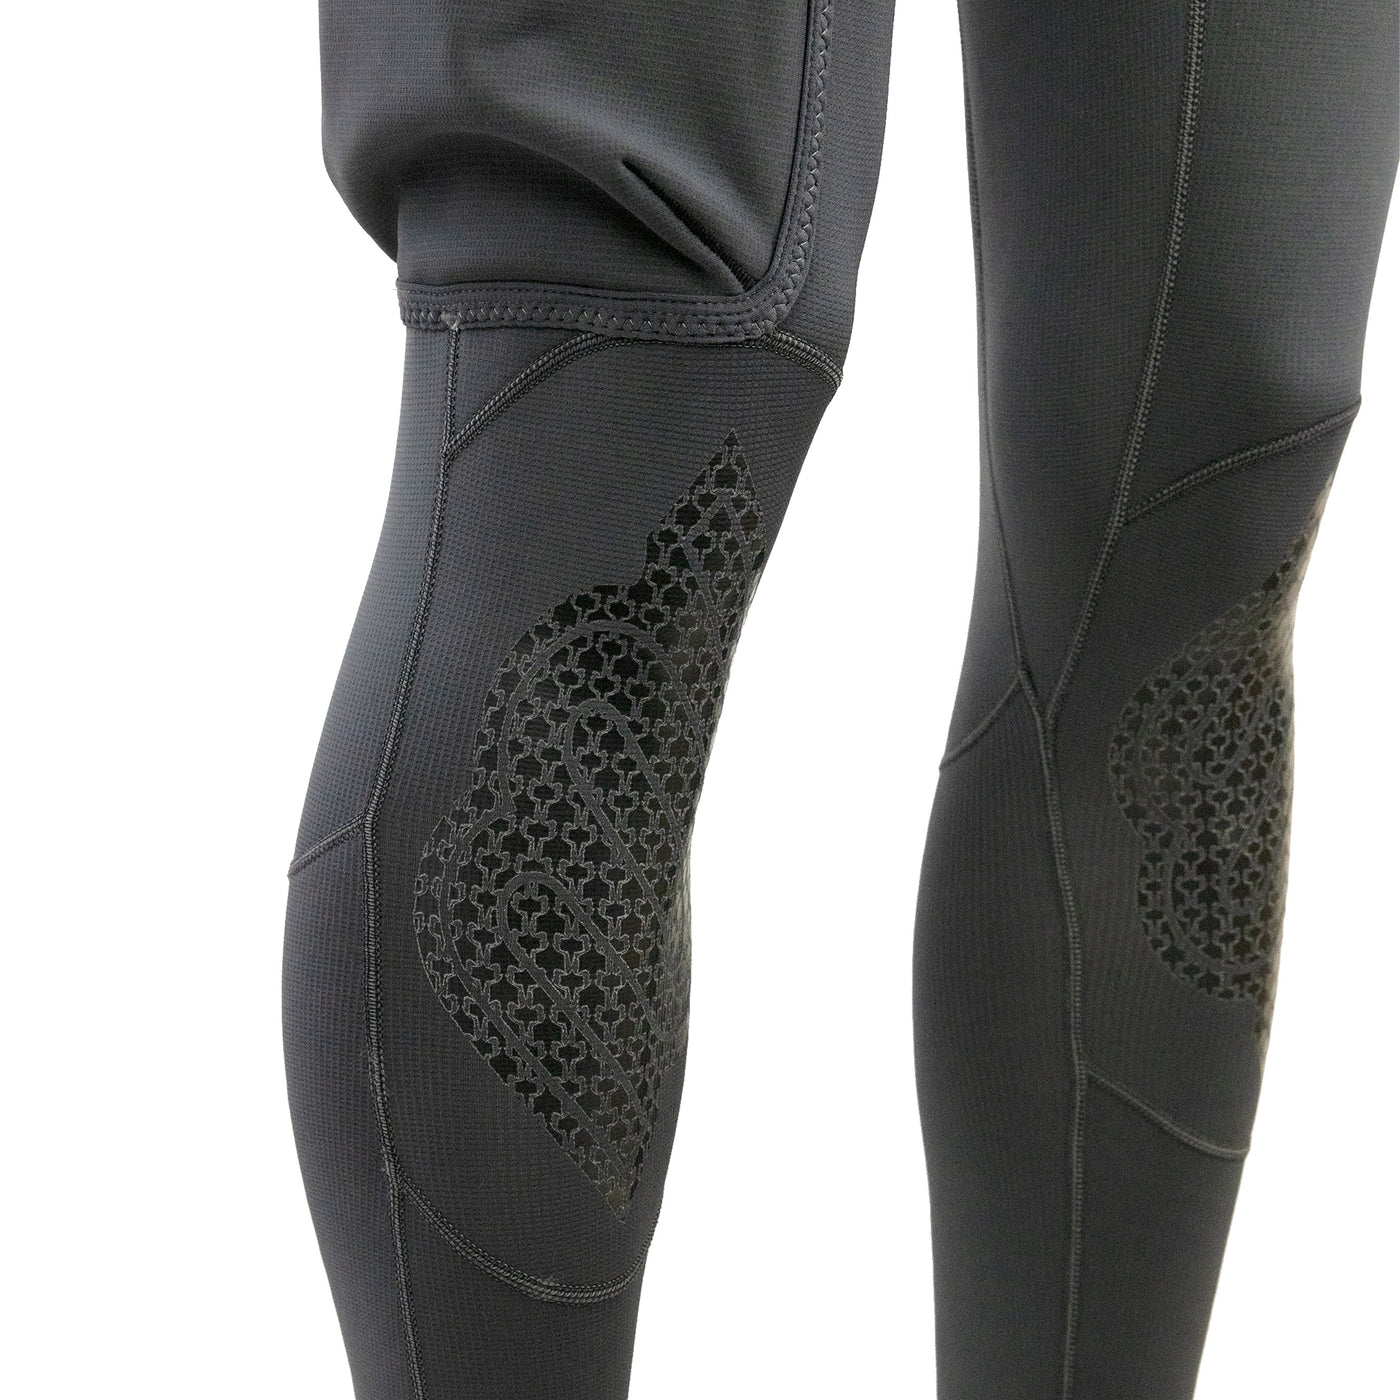 Titanium 2 Multi-Sport Suit (Male) – SHARKSKIN USA